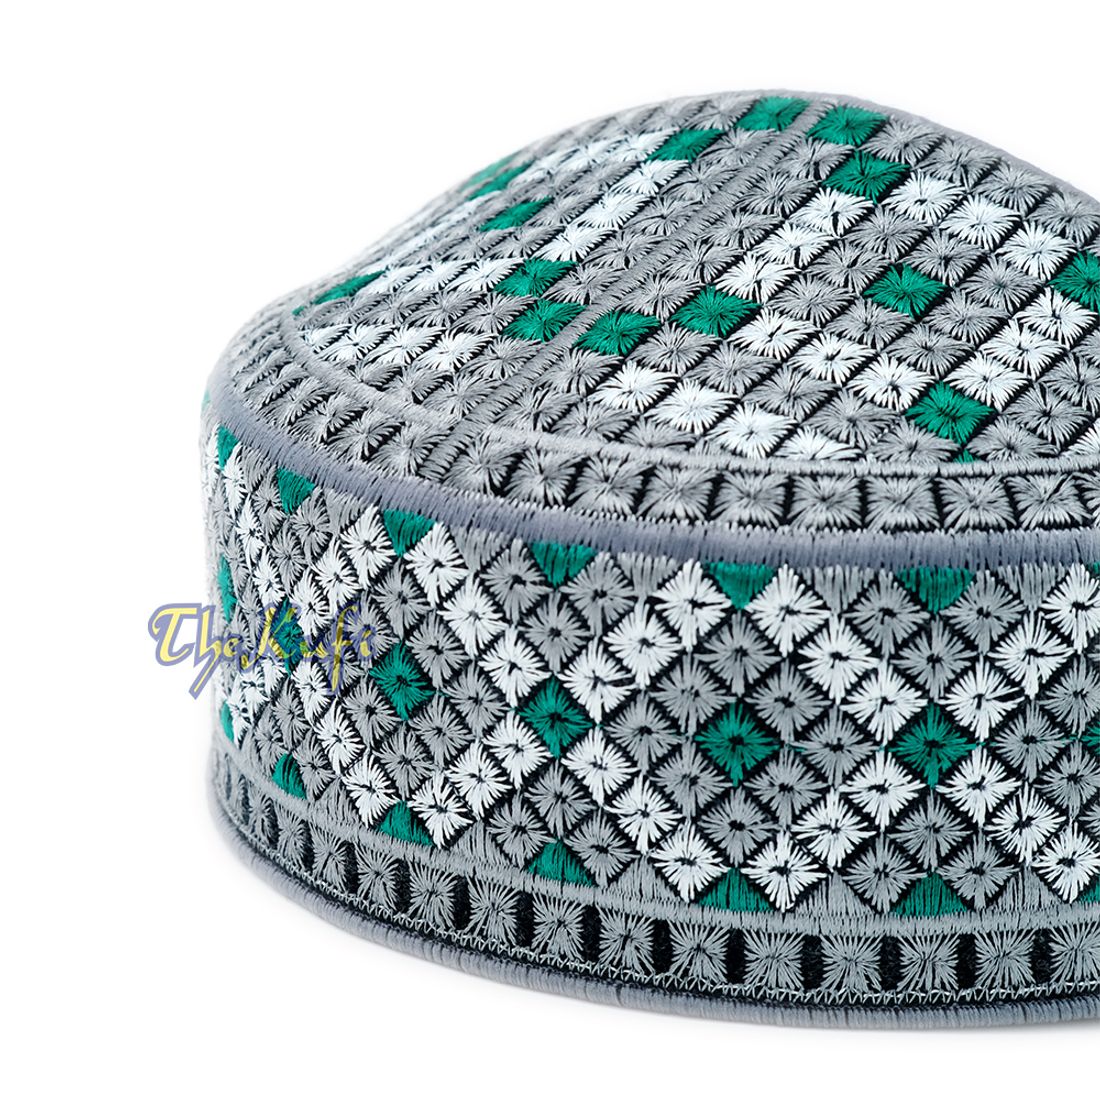 Pakistani Muslim Kufi Hats White Gray Green Embroidery Diamond Motif Rigid Round Islamic Prayer Cap Topi Tupi